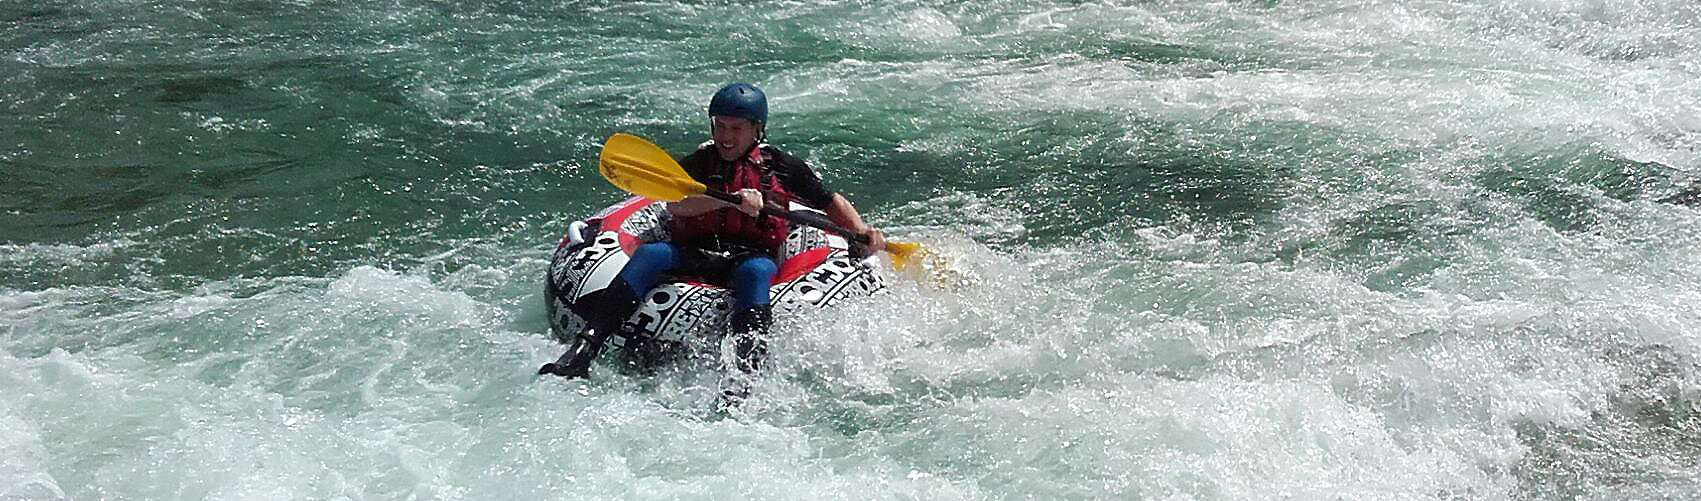 Outdoor Abenteuer Erlebnis in Bayern, River Tubing im Wildwasser Isarburg bei Lenggries, Action JGA